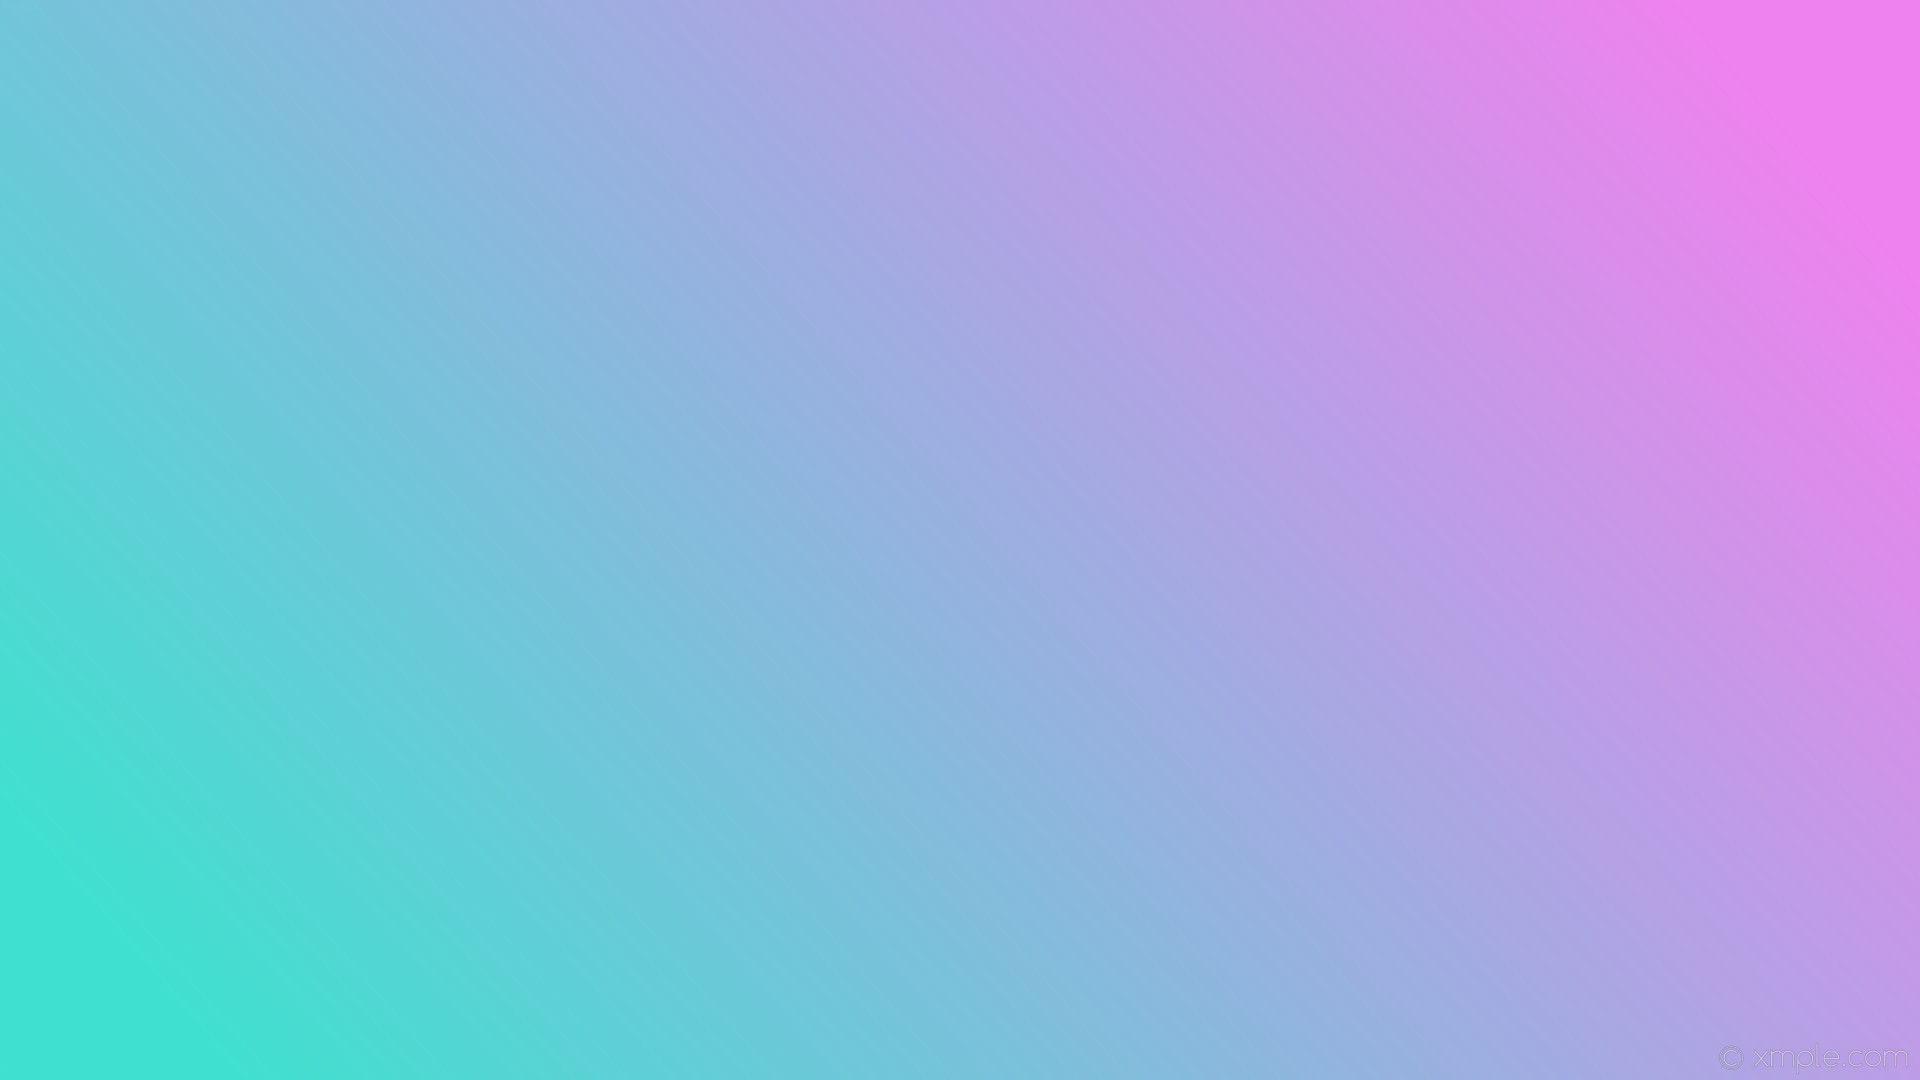 1920x1080 Hình nền xanh nhạt và hồng